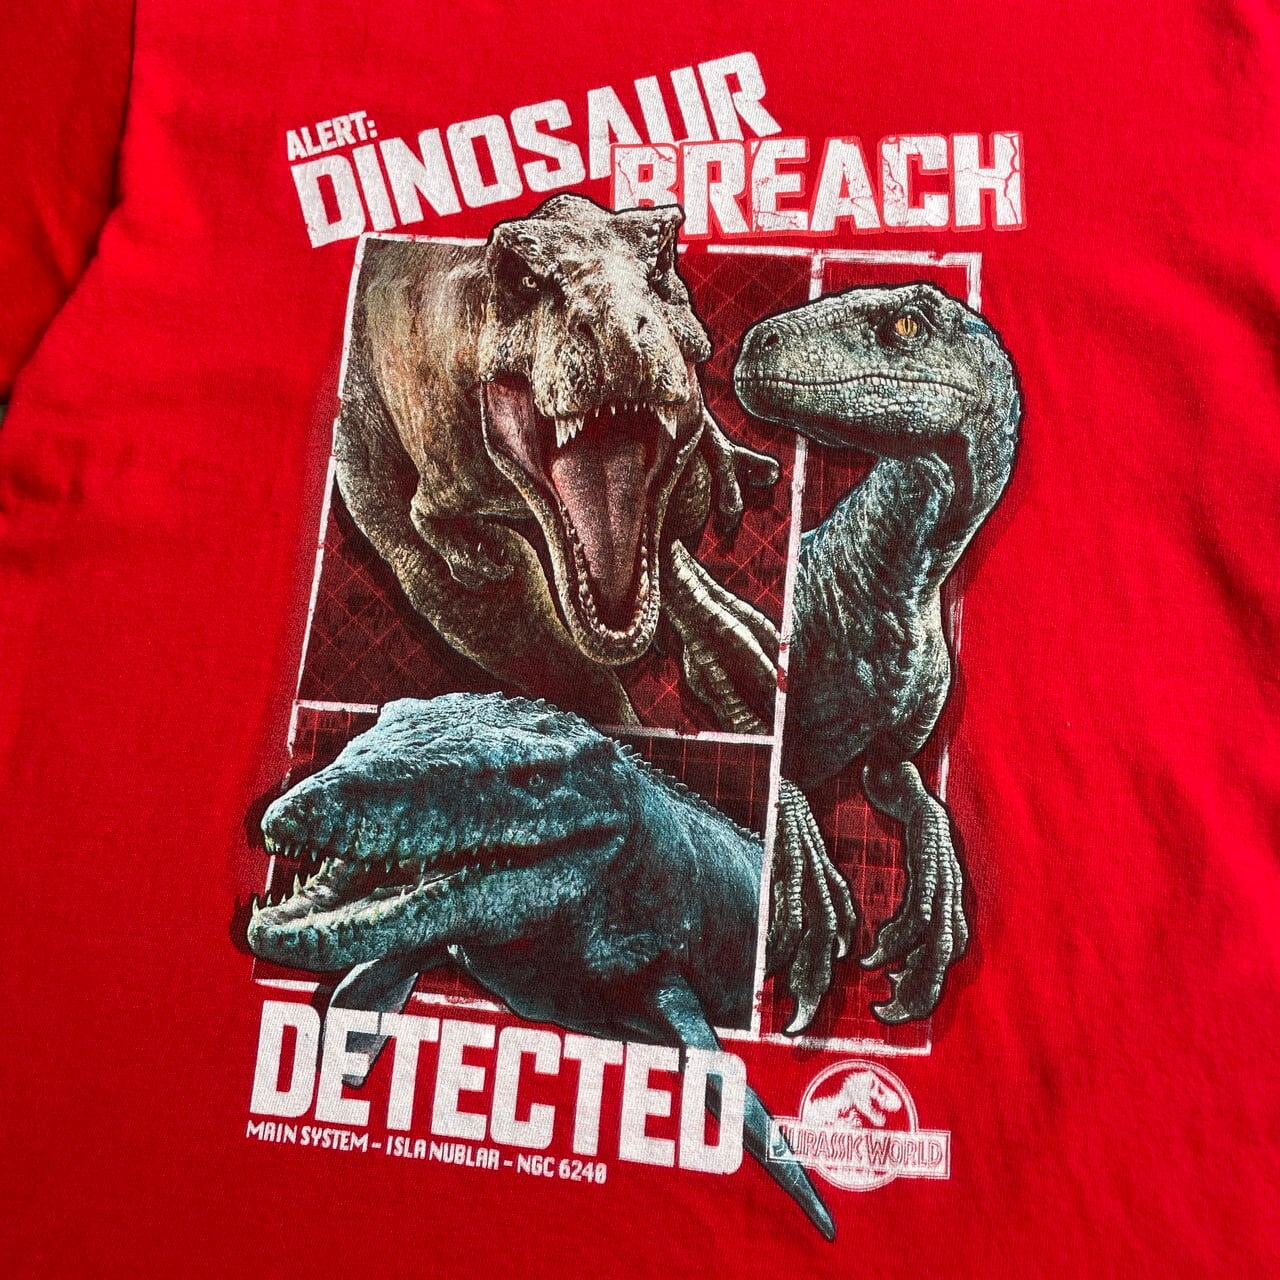 Jurassic world ジュラシックワールド Tシャツ